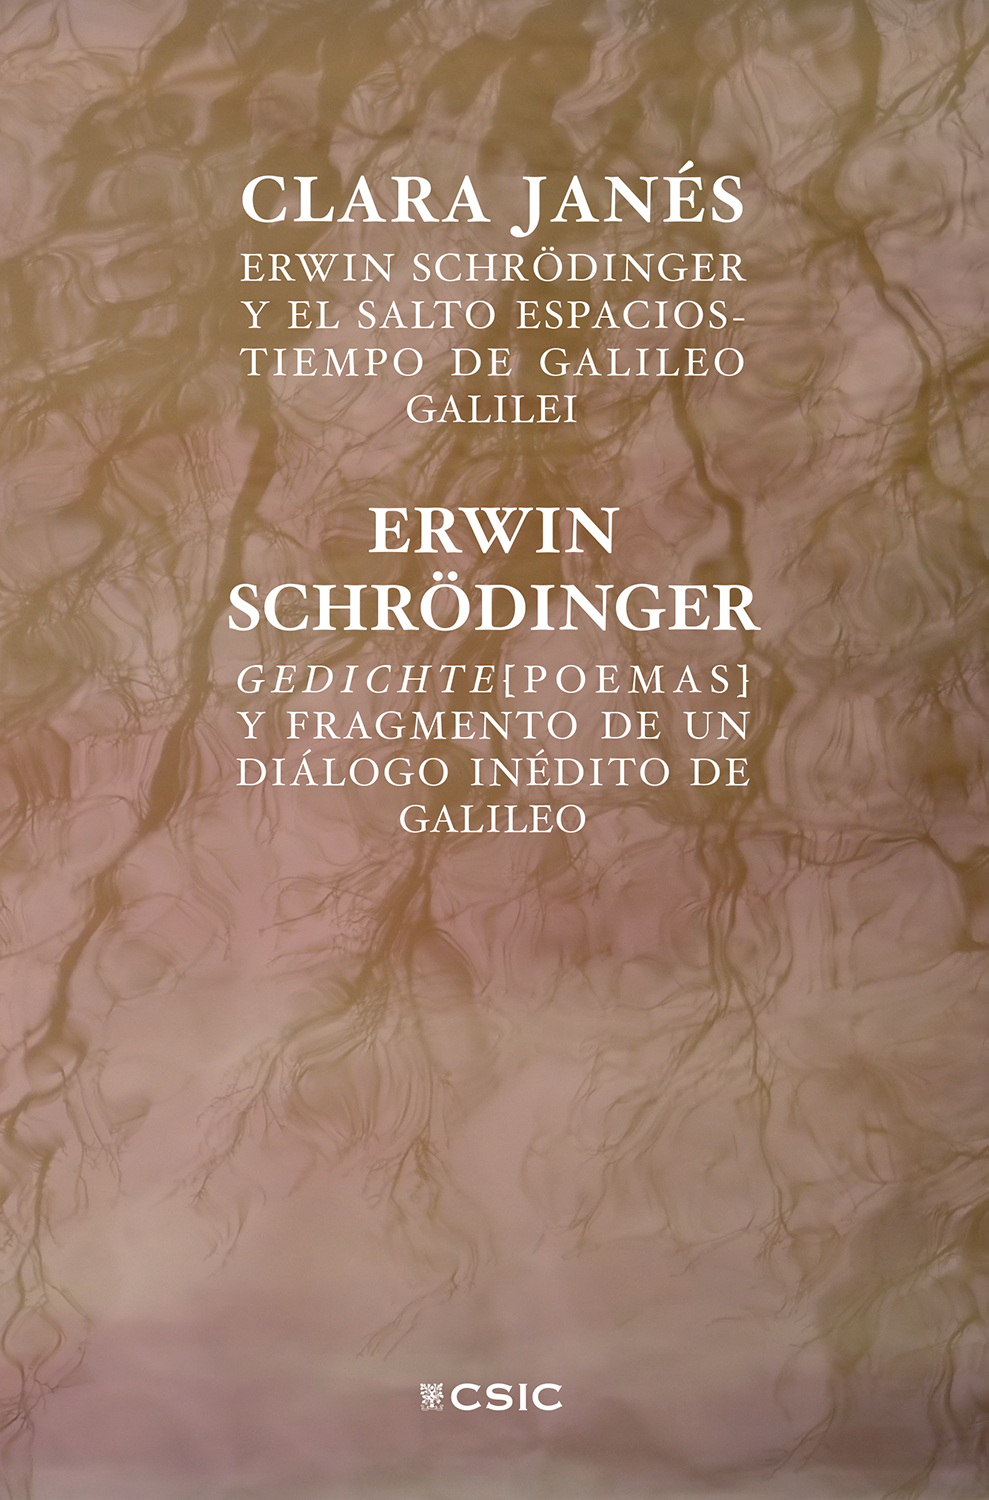 Erwin Schrödinger y el salto espacios-tiempo de Galileo Galilei / Clara Janés; Gedichte (poemas) y Fragmento de un diálogo inédito de Galileo / Erwin Schrödinger